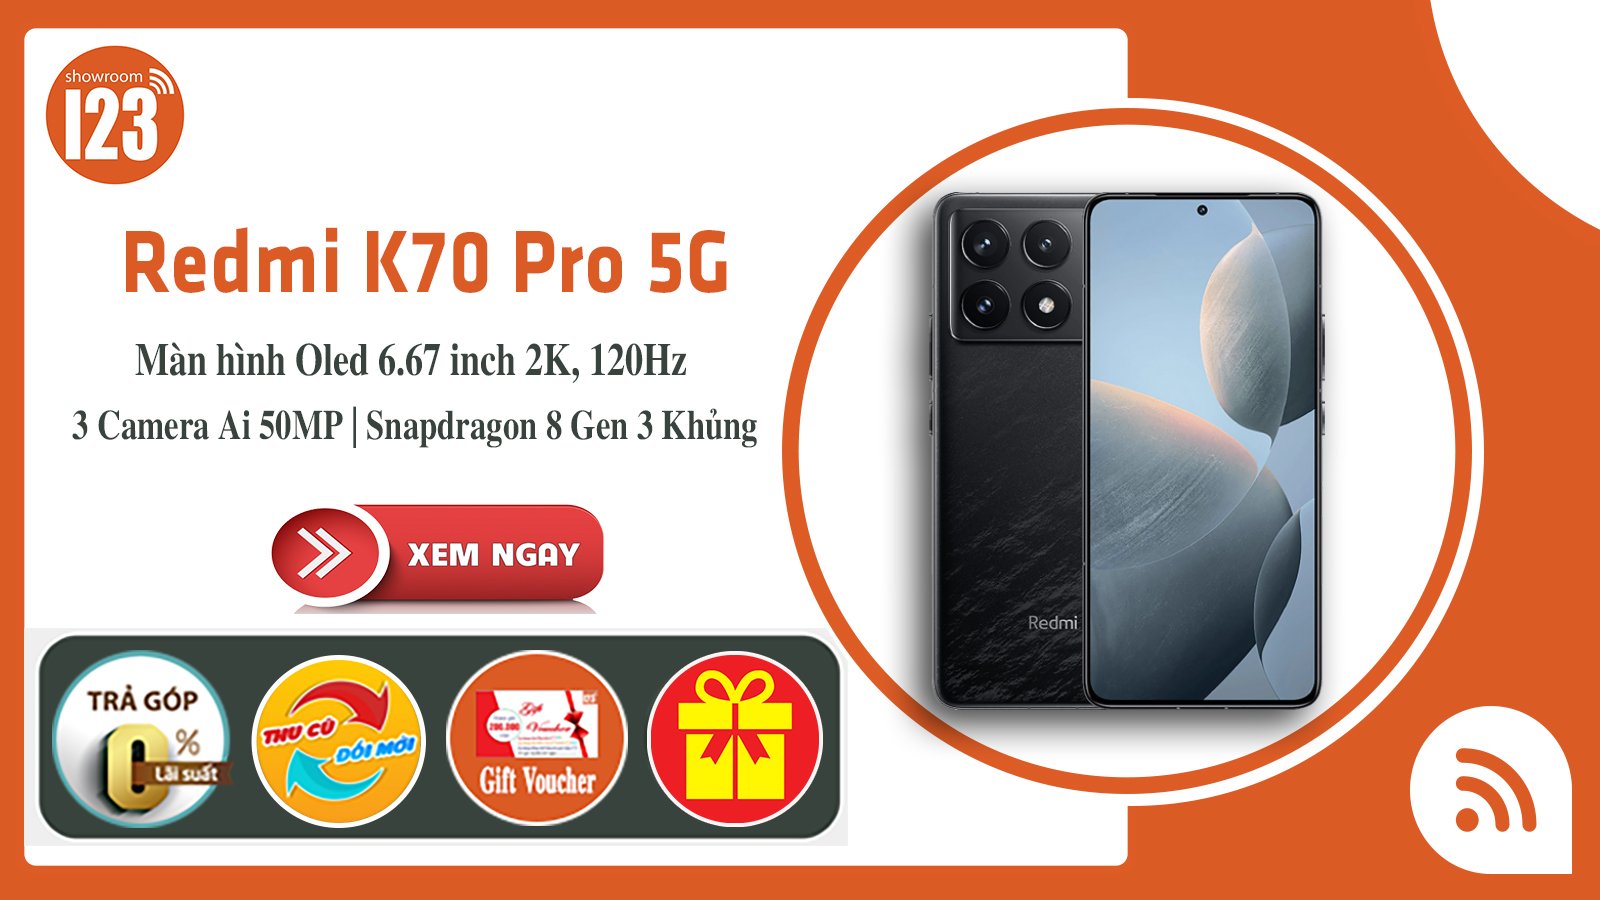 Redmi K70 Pro 5G <br> Khủng Long Bạo Chúa